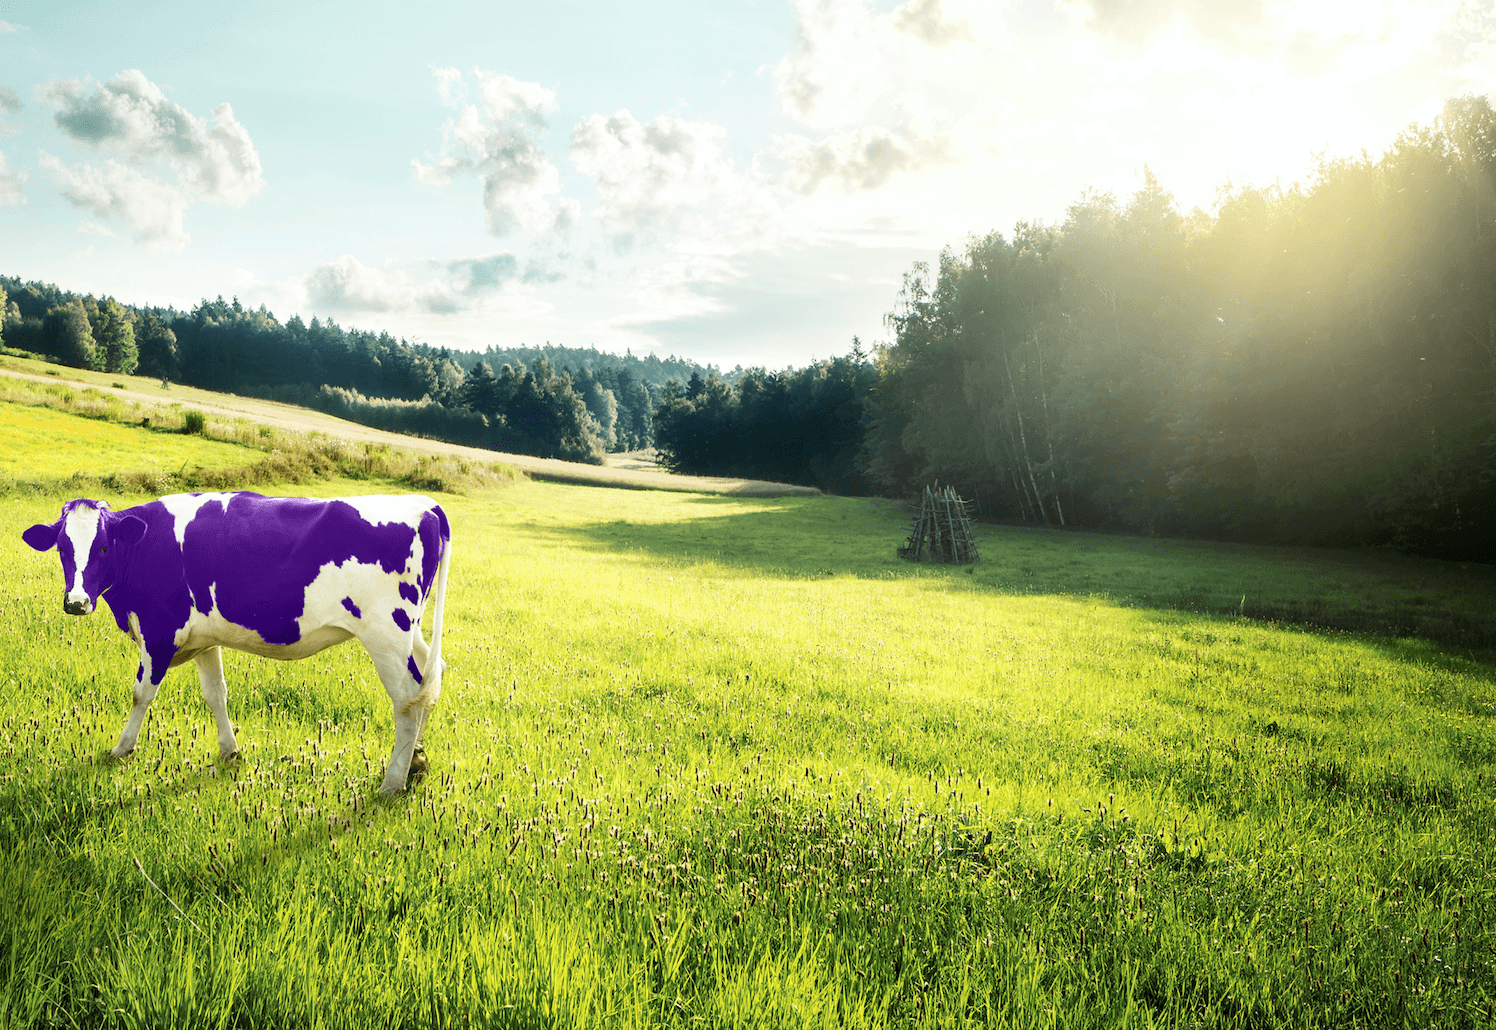 A purple cow in a field.